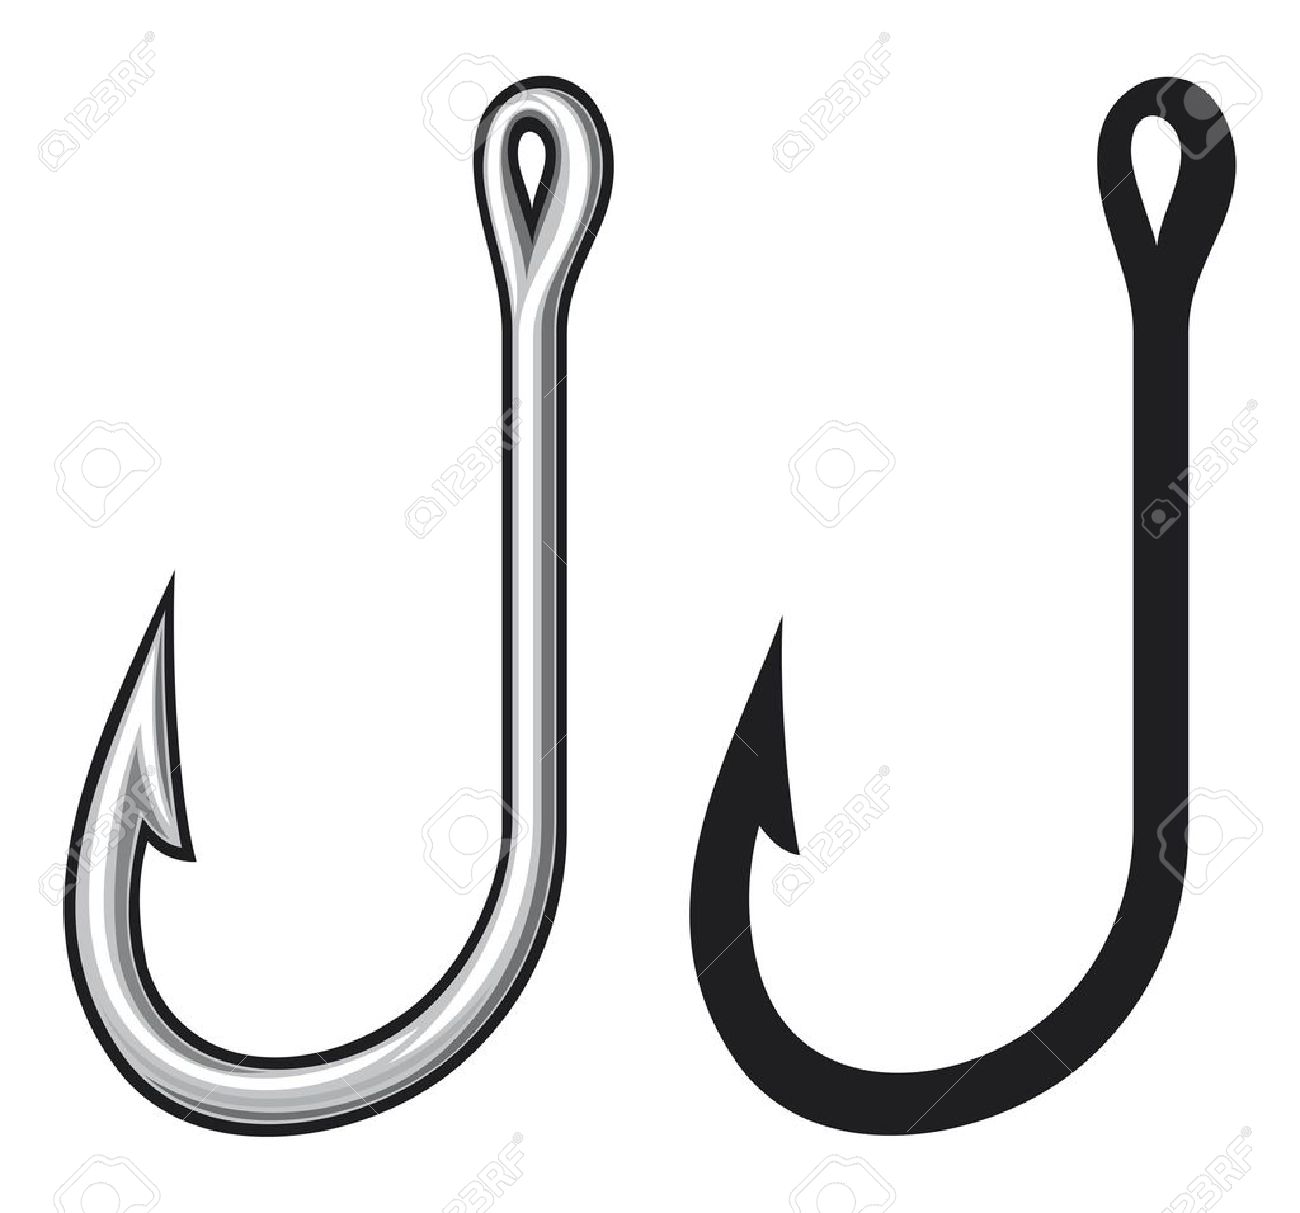 Hook cliparts. Hook Clip Art - Fish Hook Clipart